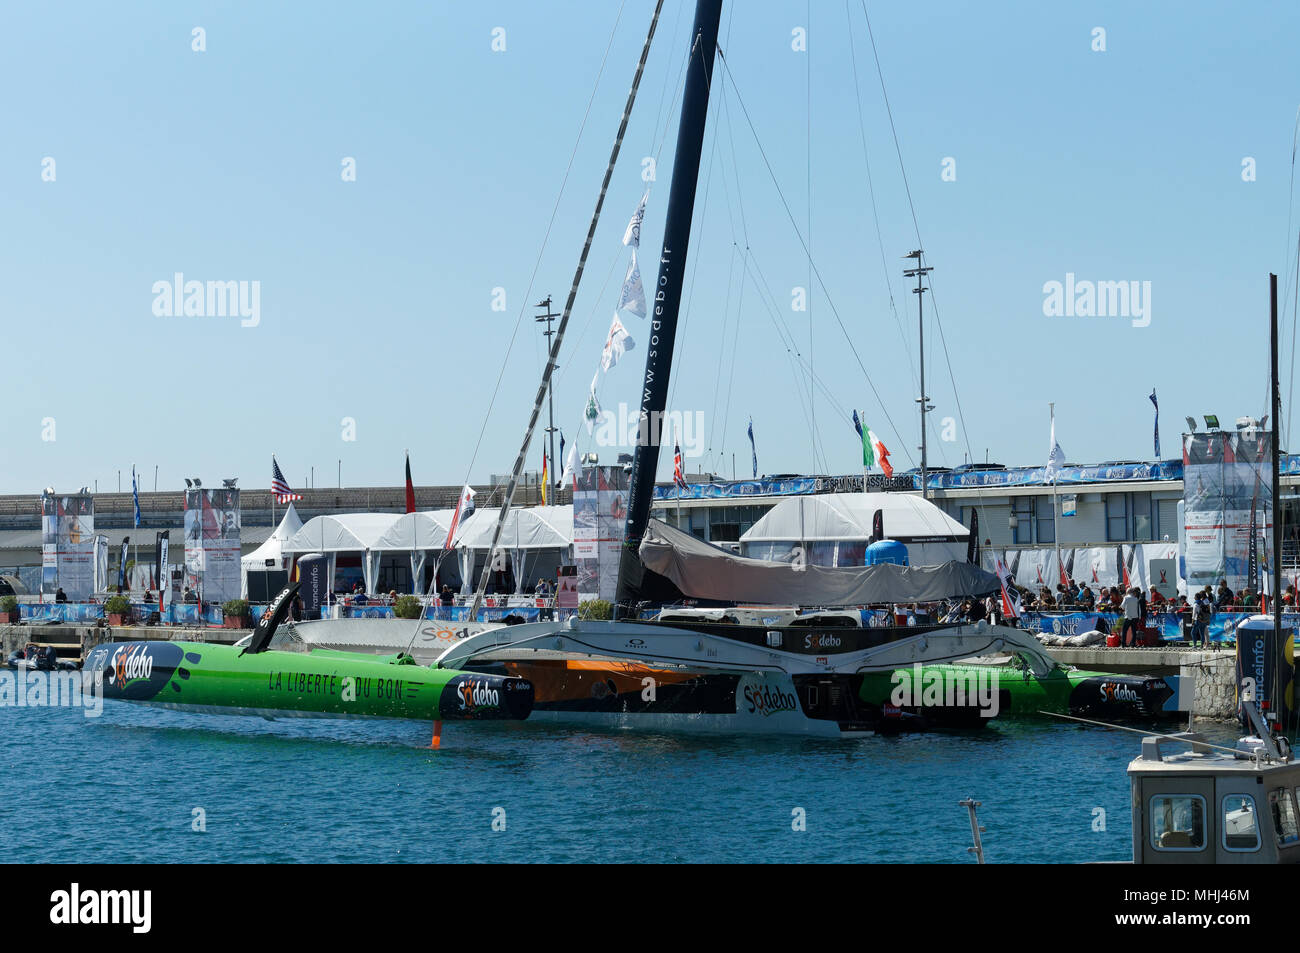 Maxi trimarano SODEBO barca ormeggiata nel porto di Nizza Costa Azzurra, Francia durante la gara di offshore Ultimed Nizza nel maggio 2018 Foto Stock